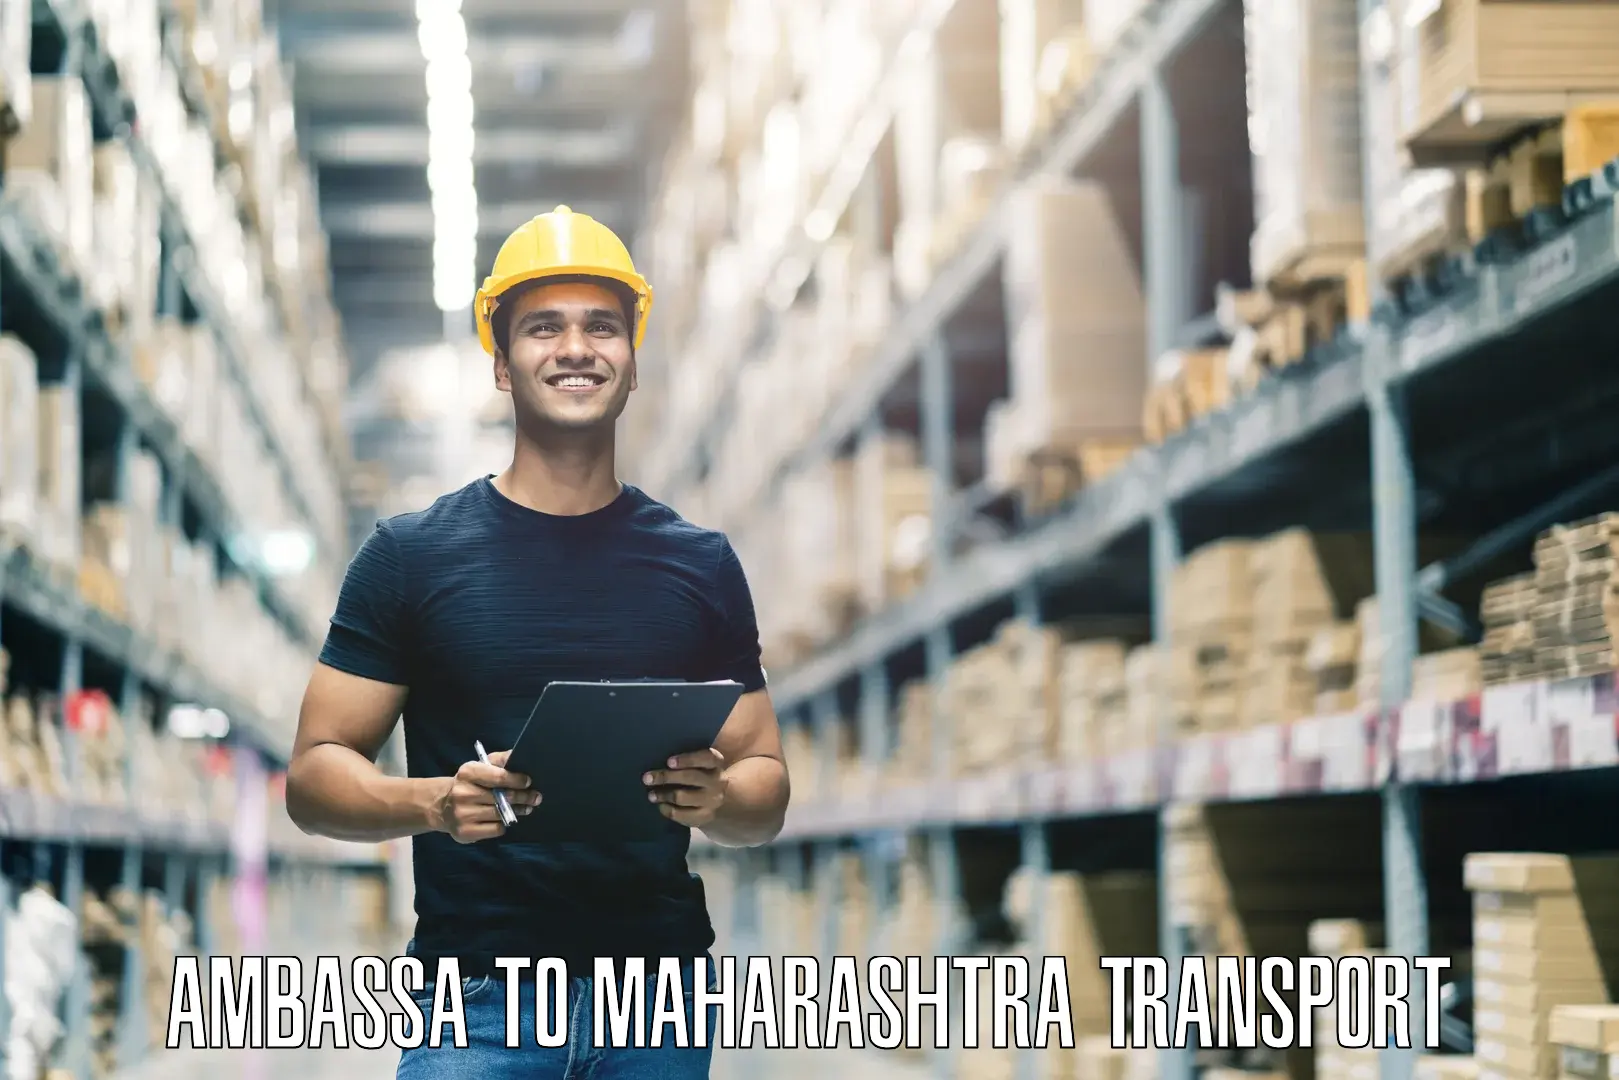 Daily transport service Ambassa to Maharashtra